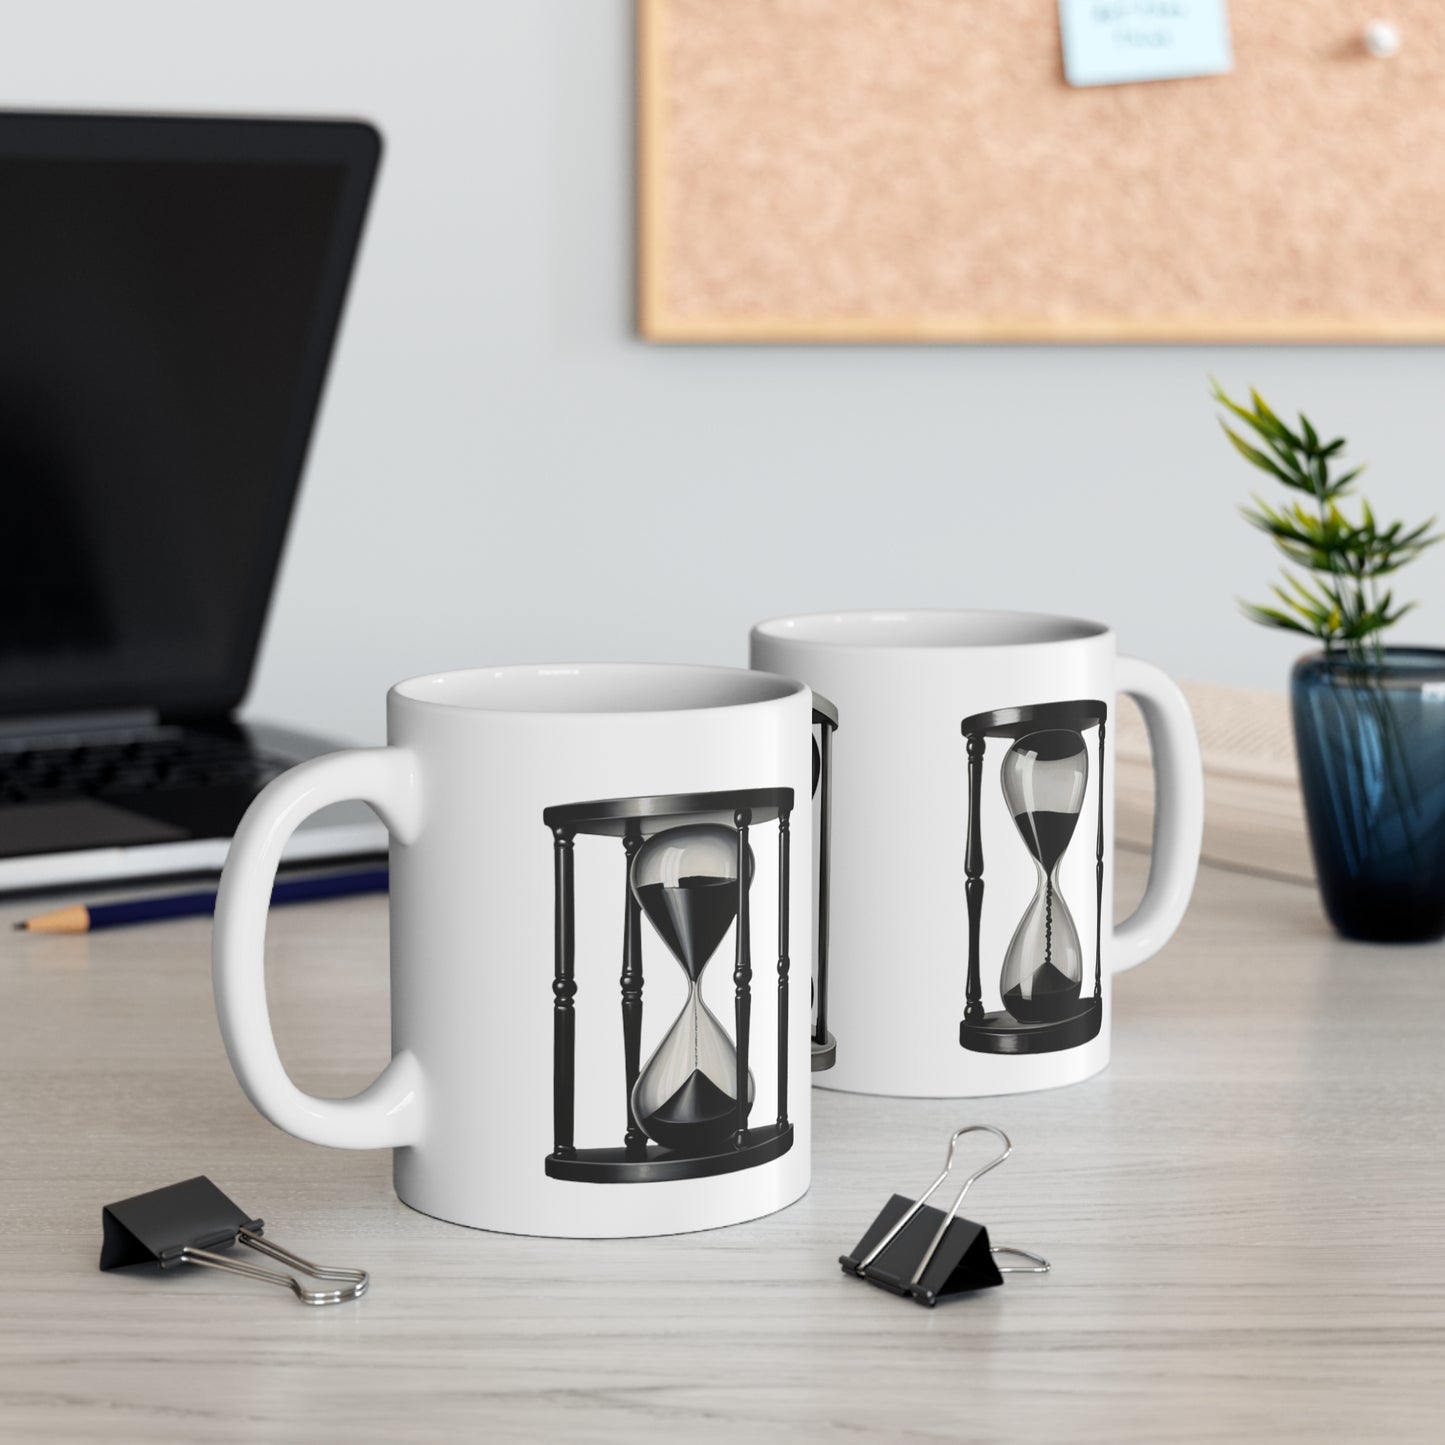 Black and White Hourglass Mug - Ceramic Coffee Mug 11oz